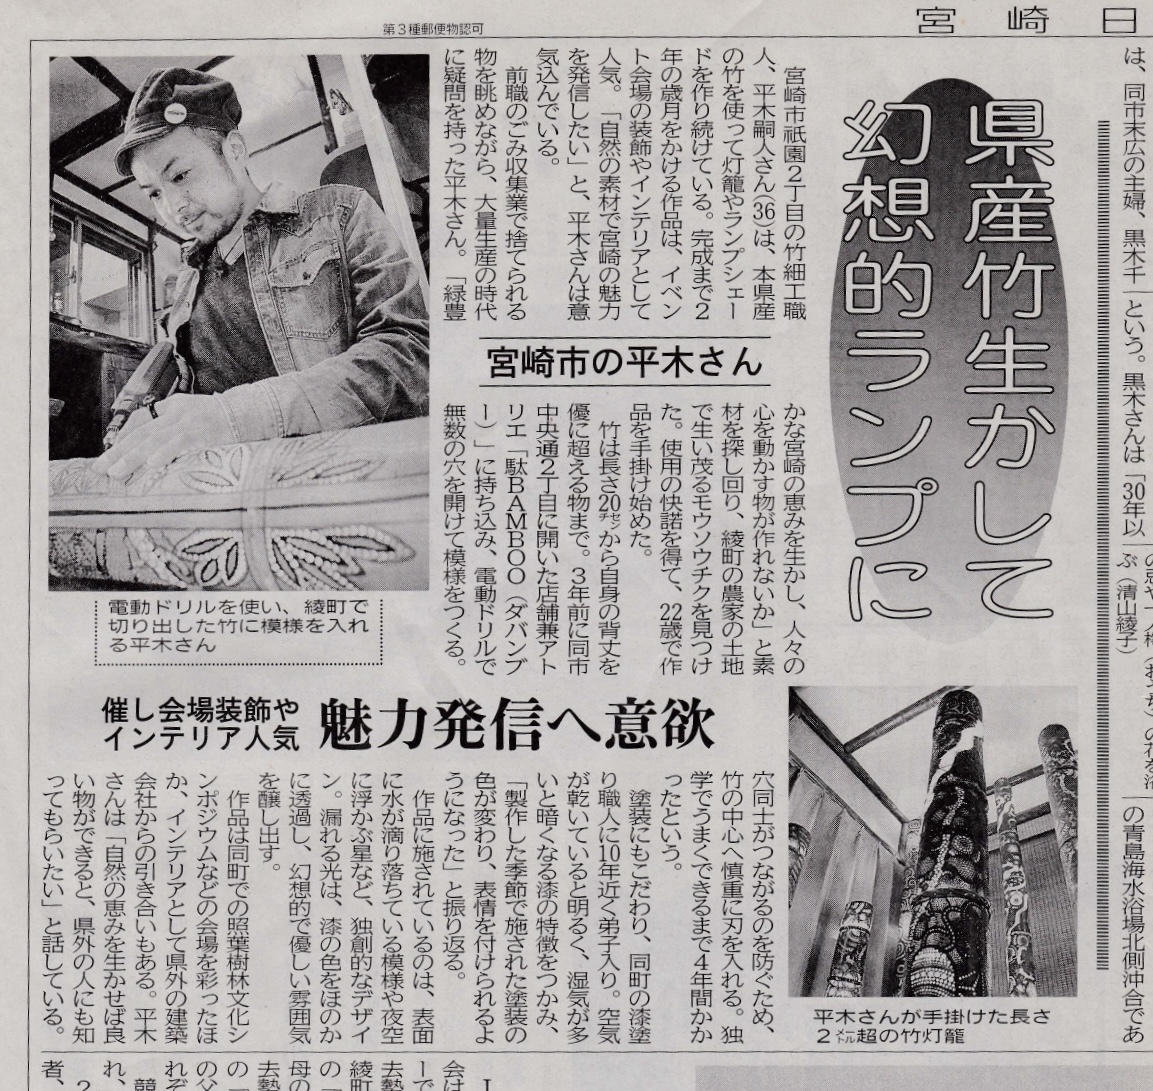 宮崎日日新聞に取材・掲載いただきました